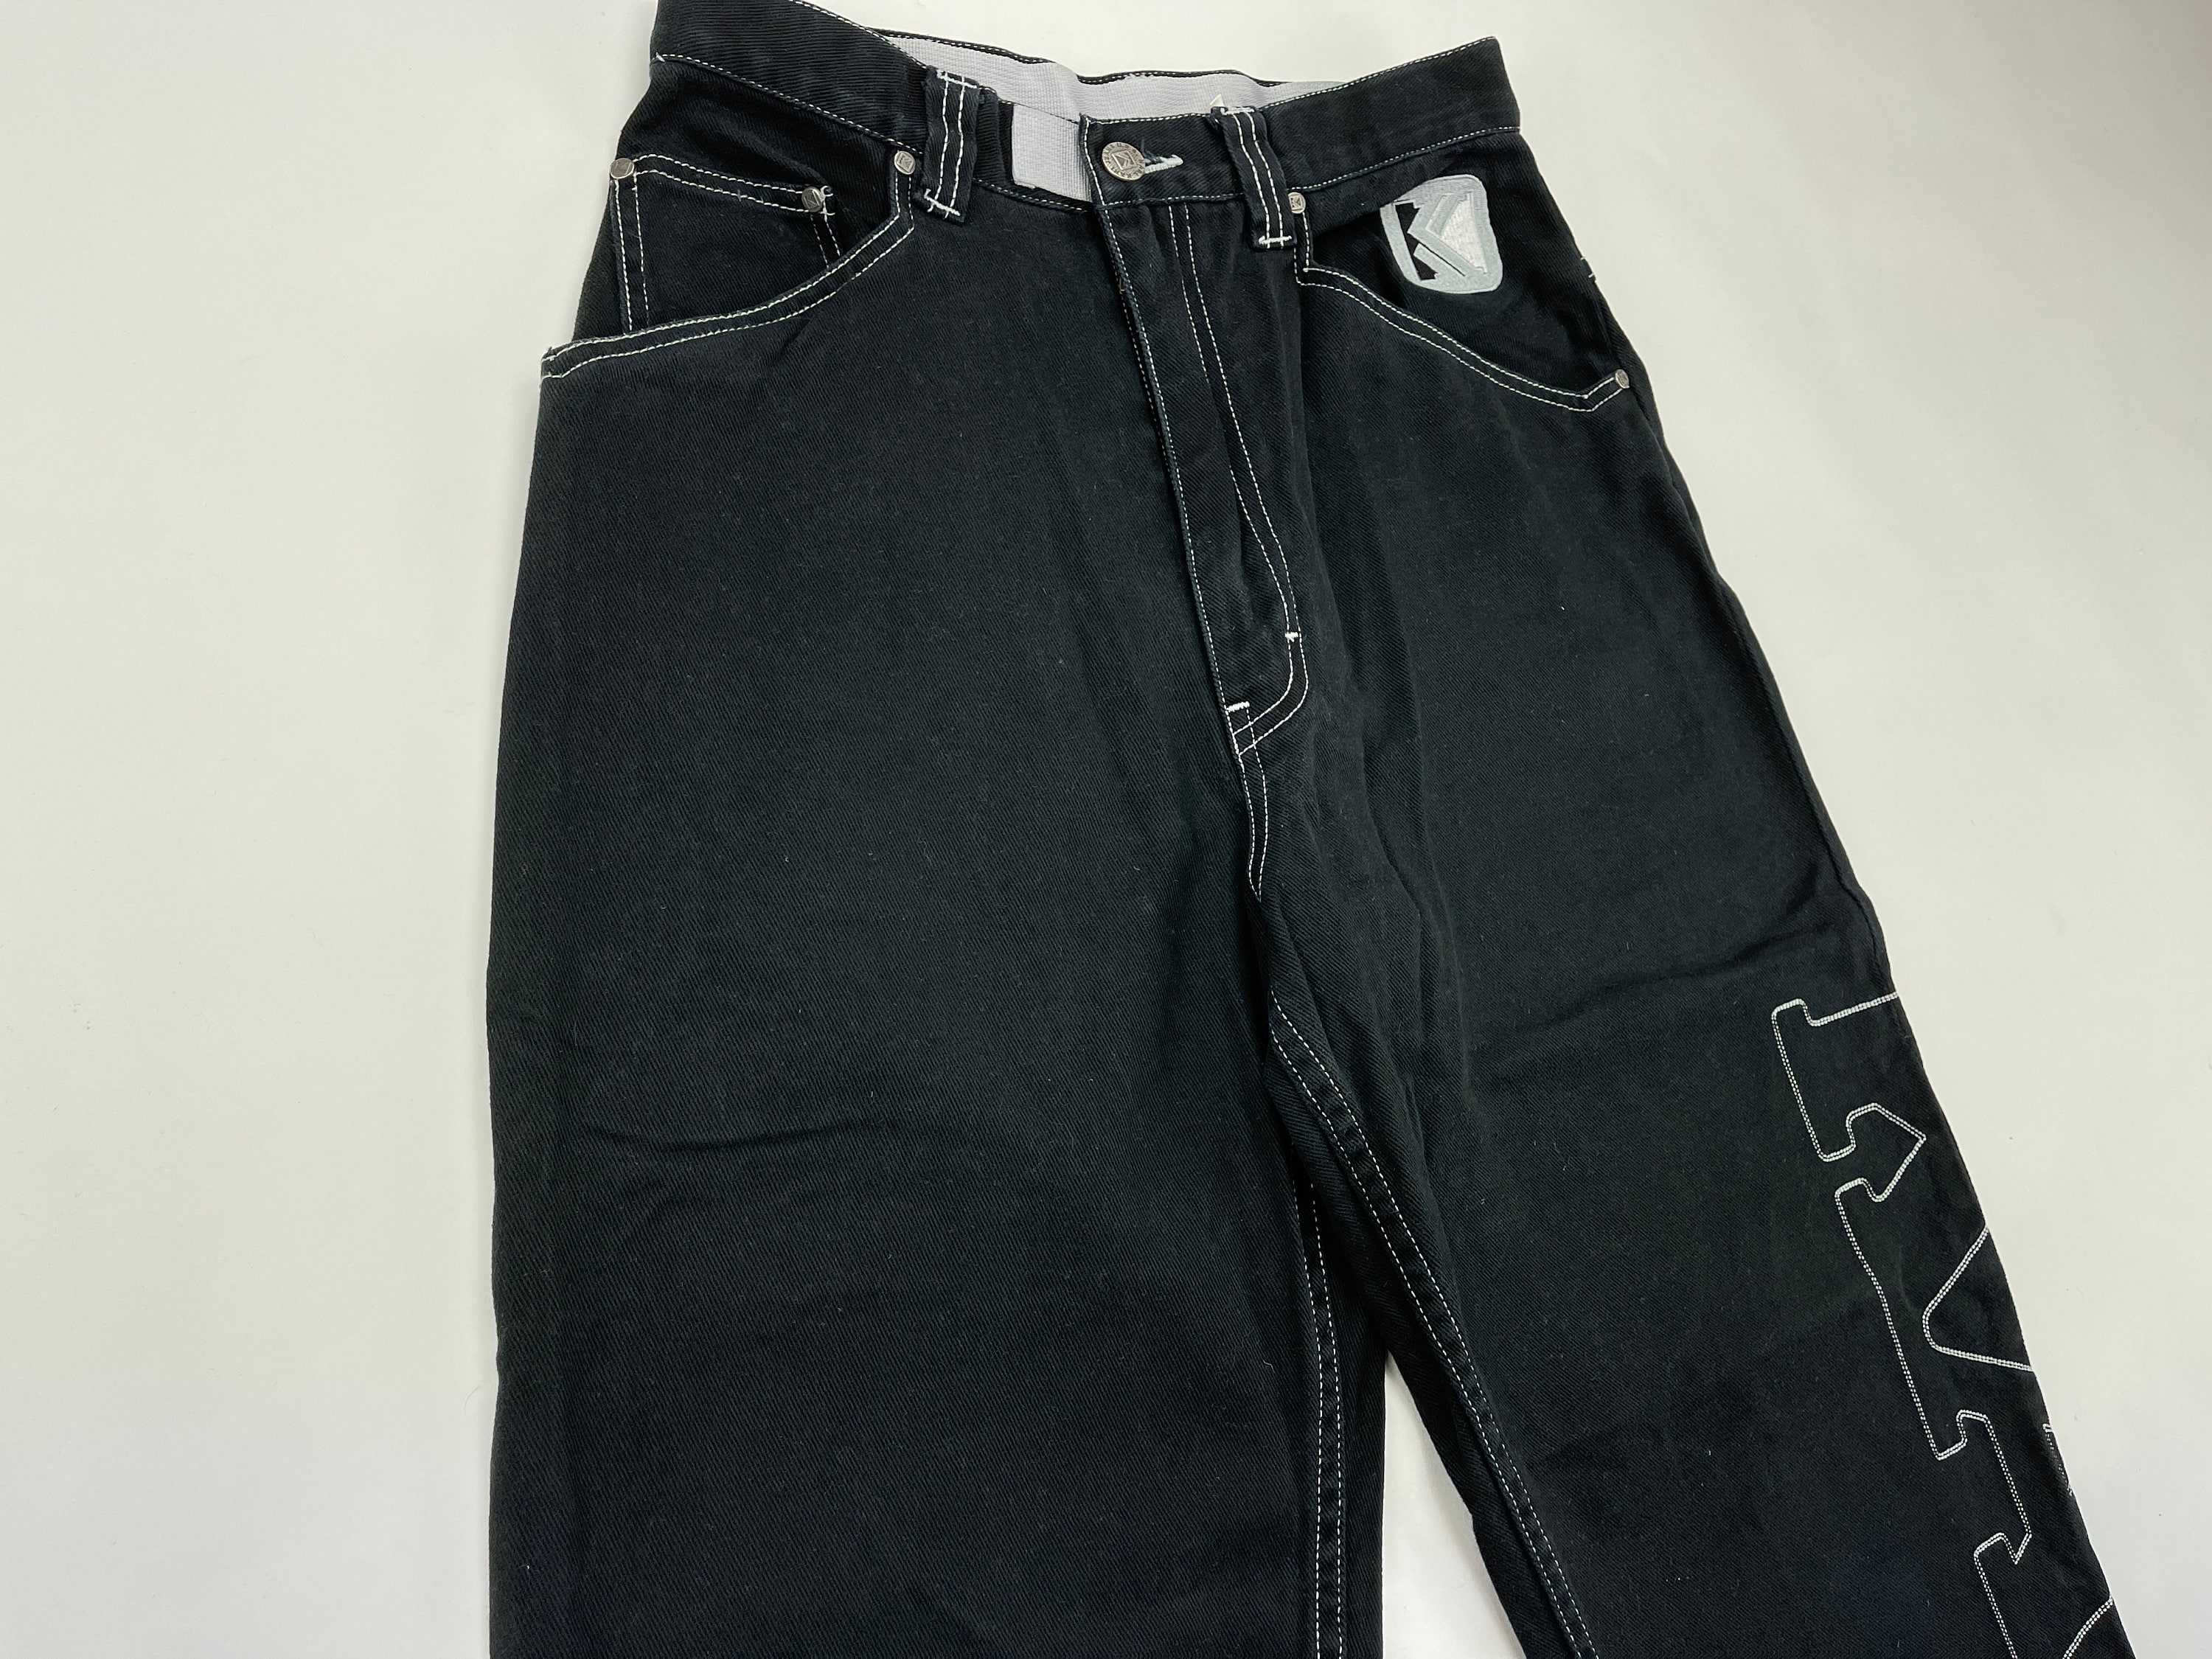 KARL KANI Jeans Black Vintage Baggy Kani Jeans Loose 90s Hip - Etsy UK